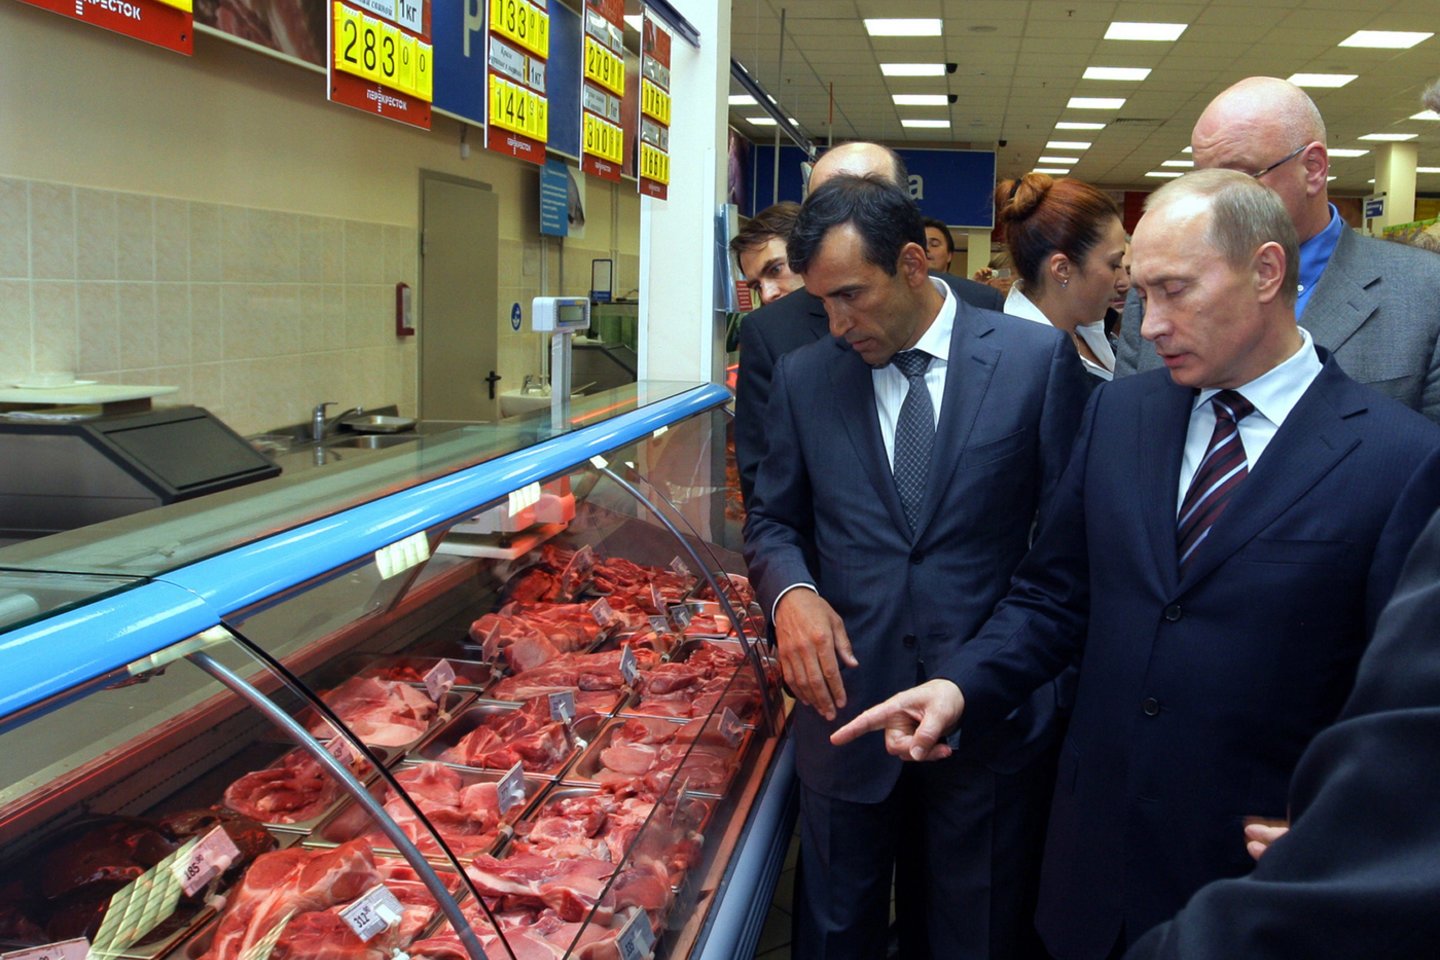  V.Putino veidą pirkėjui priminė vakuumuotas jautienos kepsnys.<br> AFP/Scanpix nuotr.